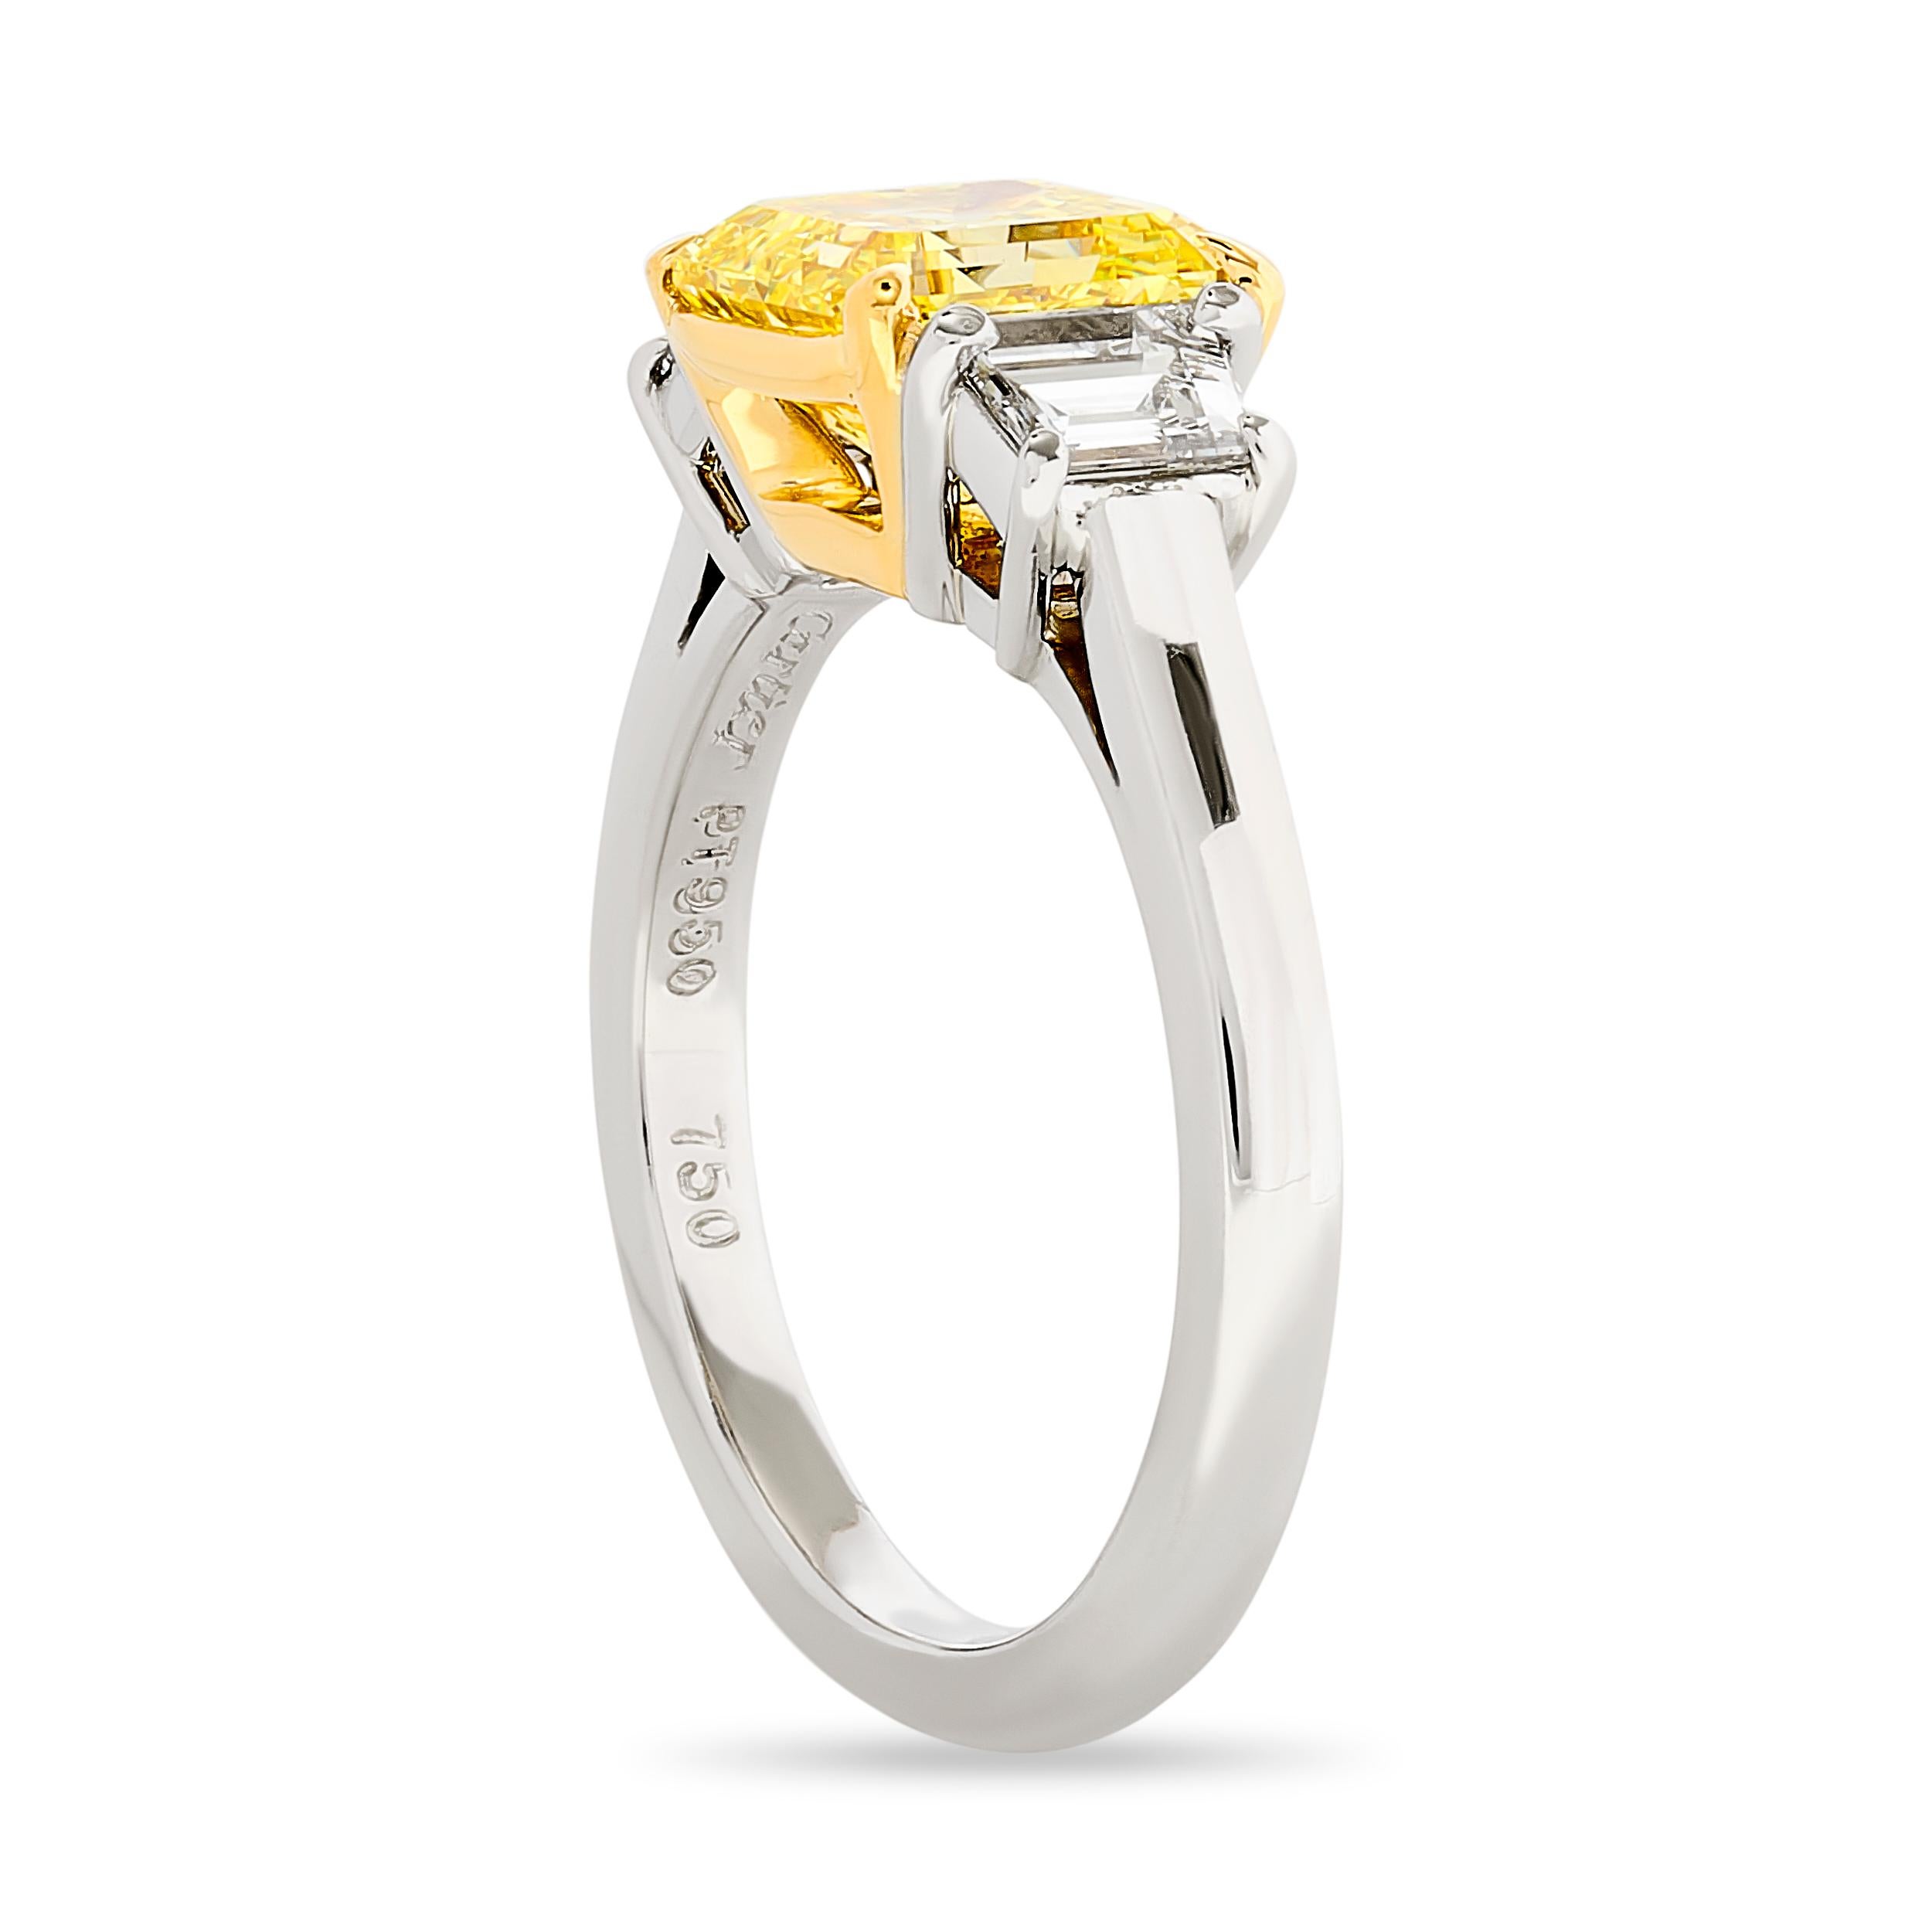 Goldenes Strahlen: Dieser 3-Stein-Diamantring von Cartier mit einem quadratischen, smaragdgeschliffenen Diamanten im Herzen von Fancy Intense Yellow besticht durch seine Brillanz.

Dieser Ring ist aus Platin und 18k Gelbgold gefertigt und hat:
1